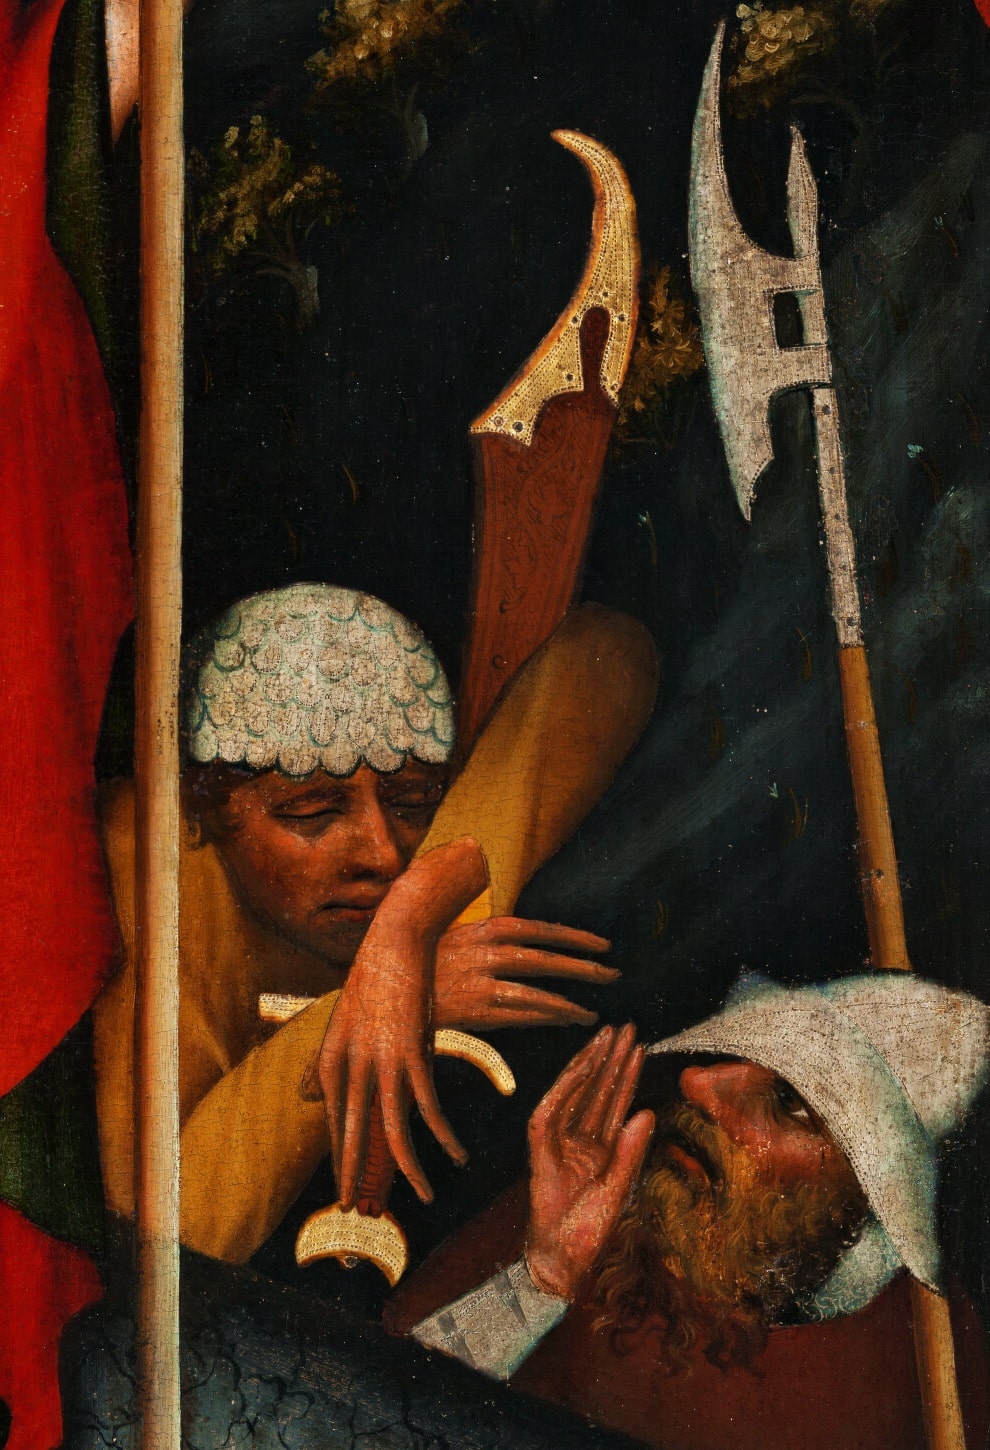 Anonimo (Maestro dell’Altare di Wittingau, XIV-XV secolo), “Resurrezione di Cristo”, 1380 c.a, tempera su tavola (particolare). Praga (Repubblica Ceca). Národní galerie